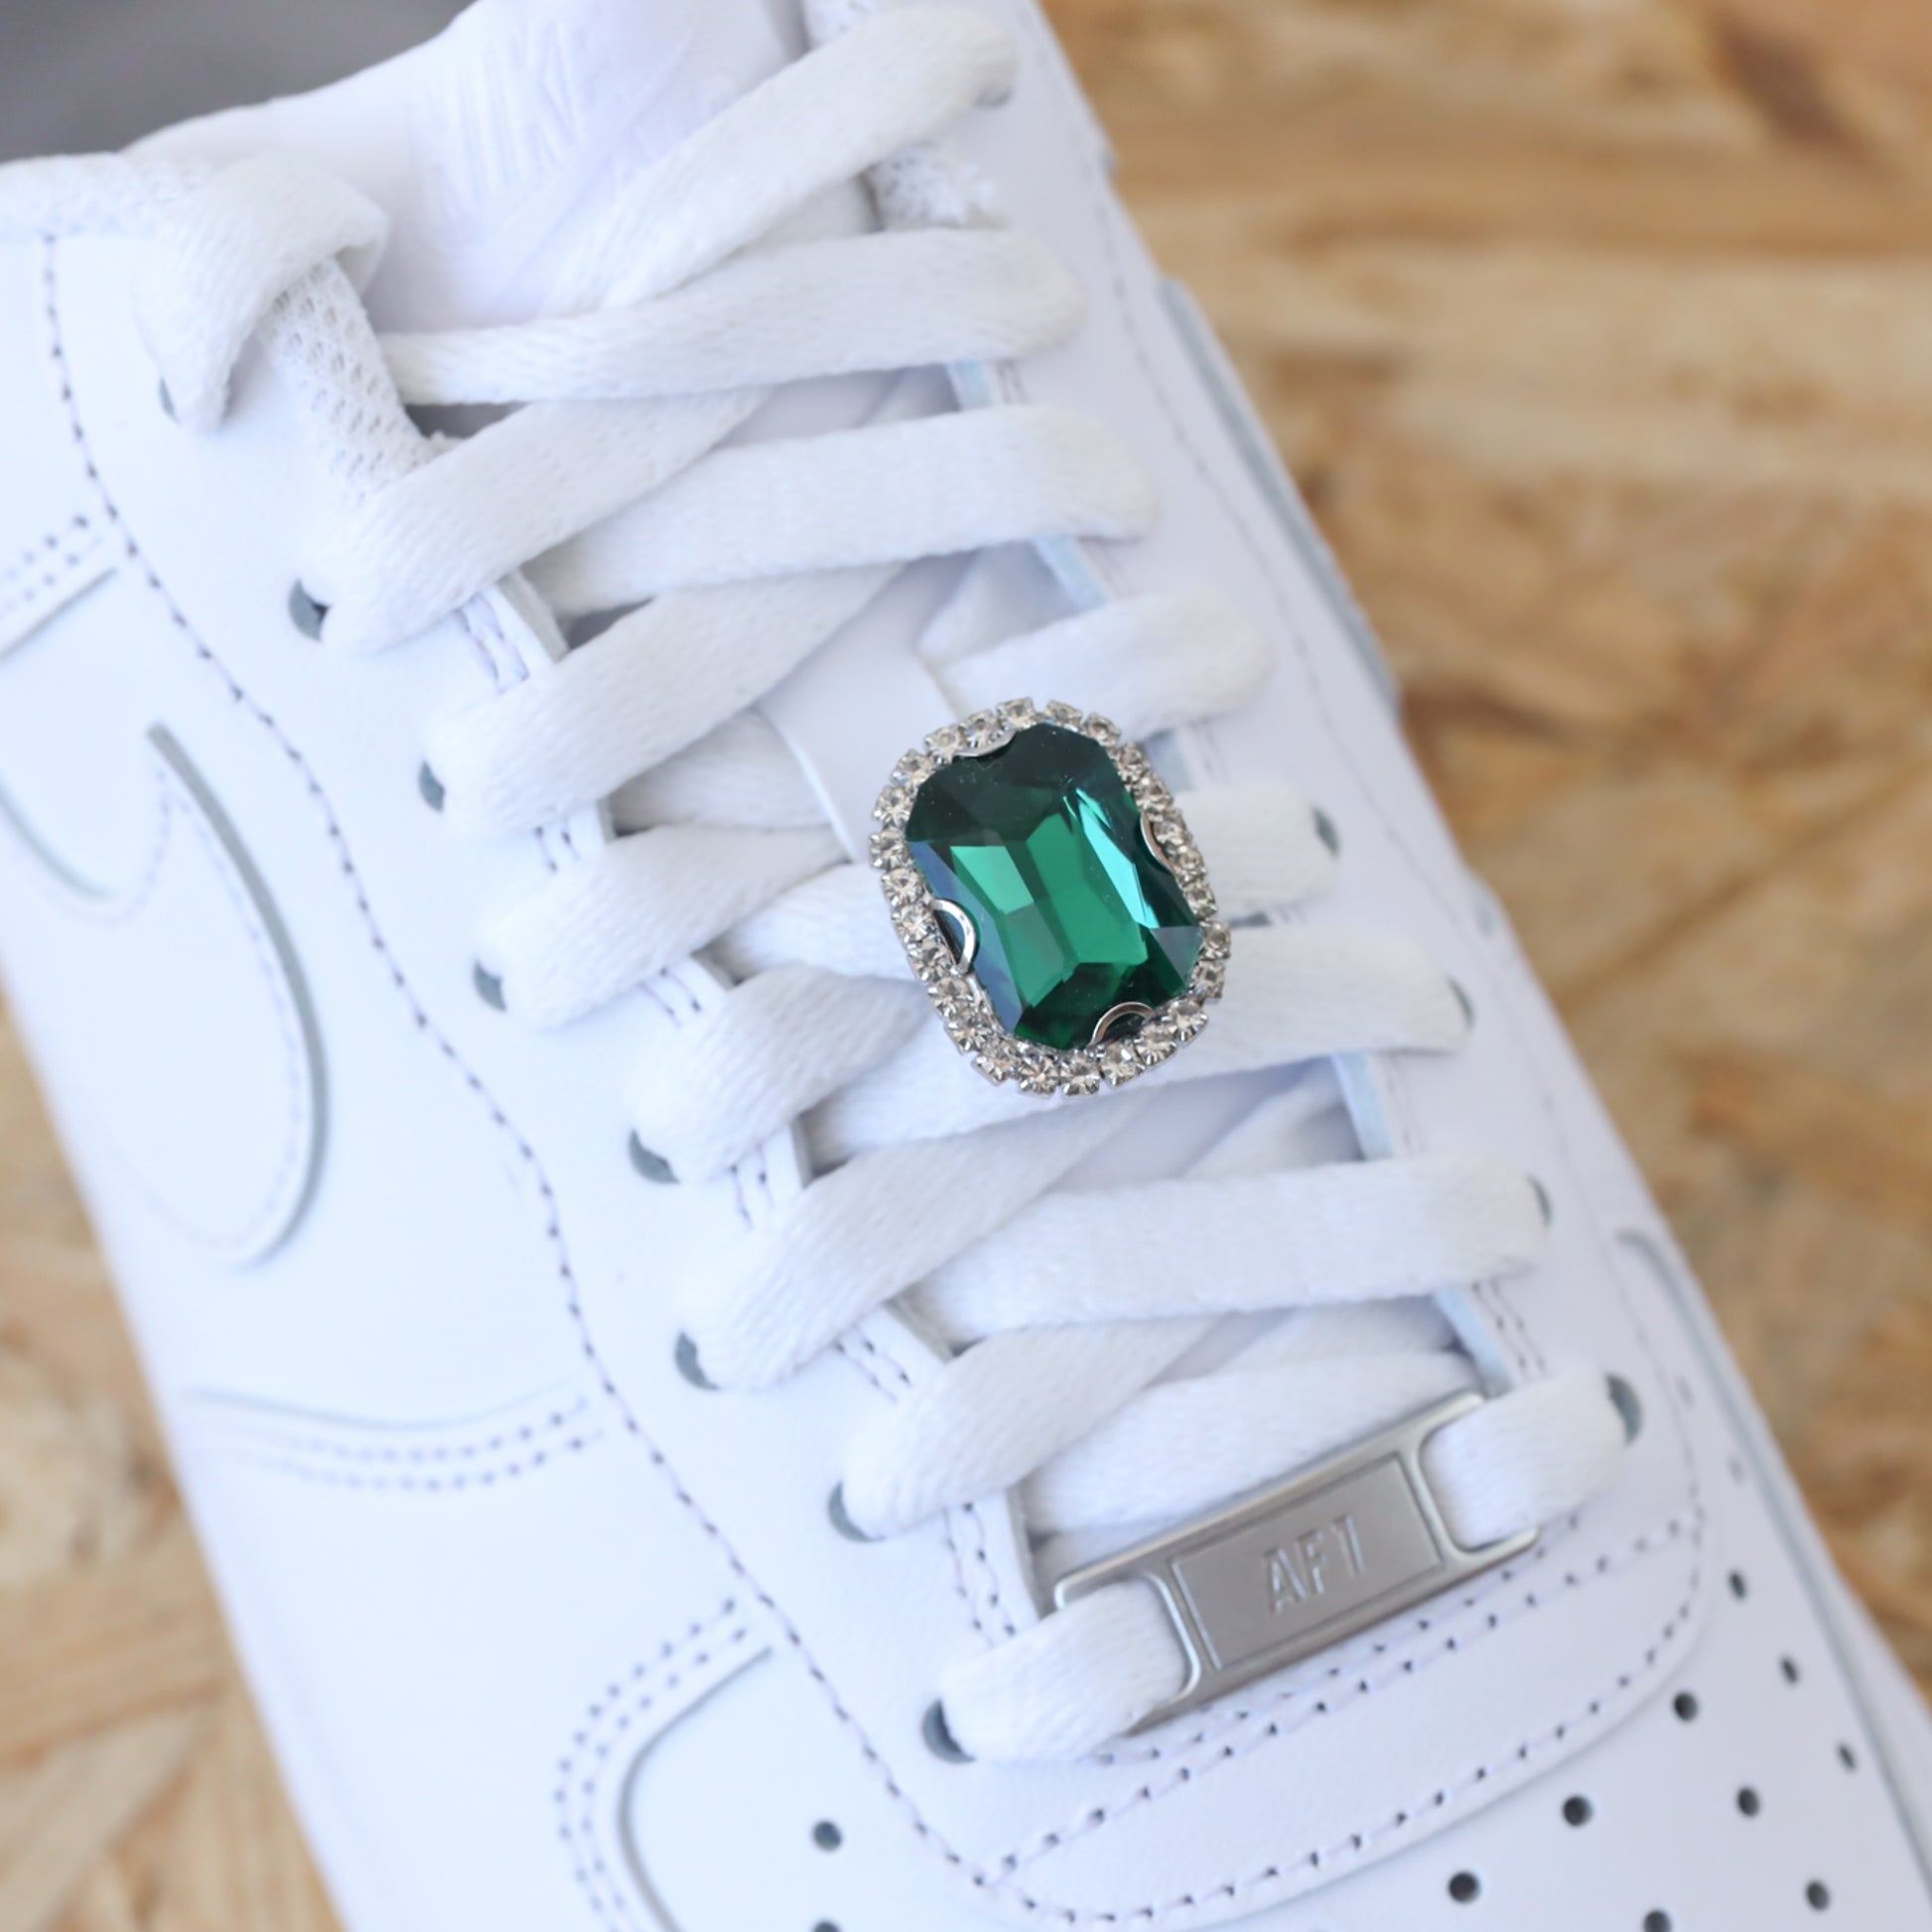 Bijou de lacets pour sneakers nike air force 1 custom et adidas stan smith vert à strass argenté